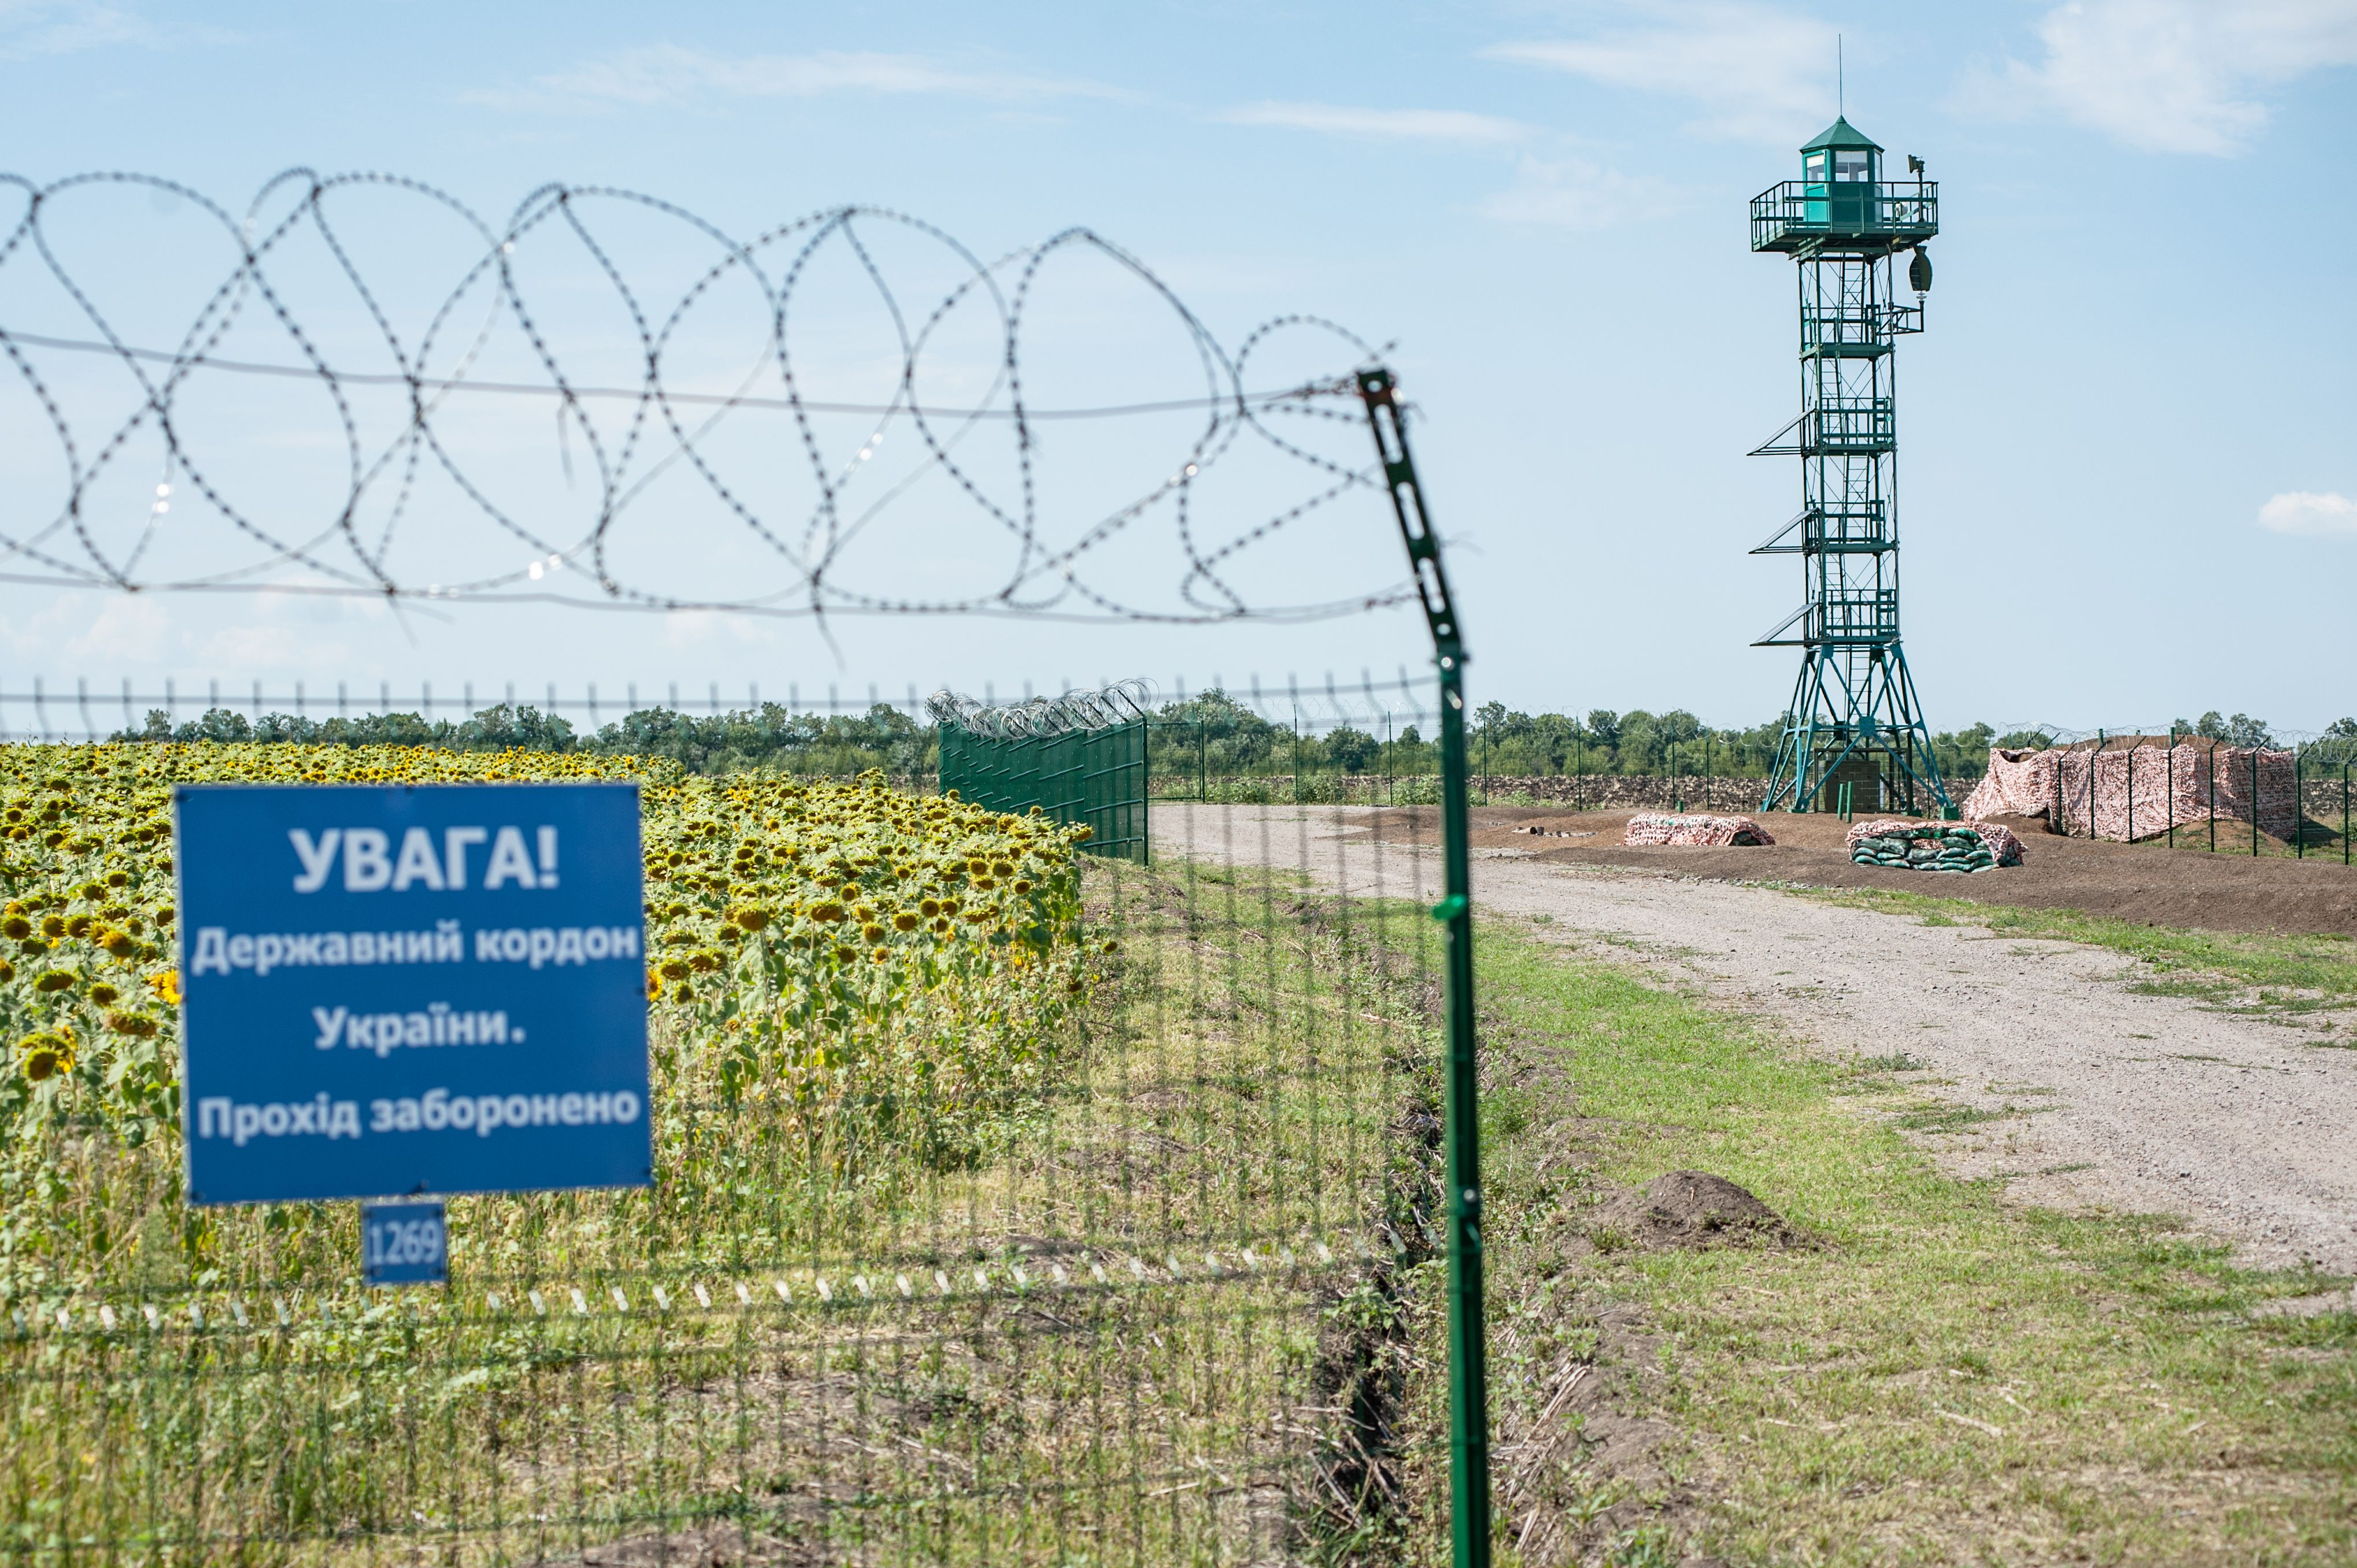 Нелегалы из Беларуси могут штурмовать Украину: пограничники тренируют скорость обороны границы